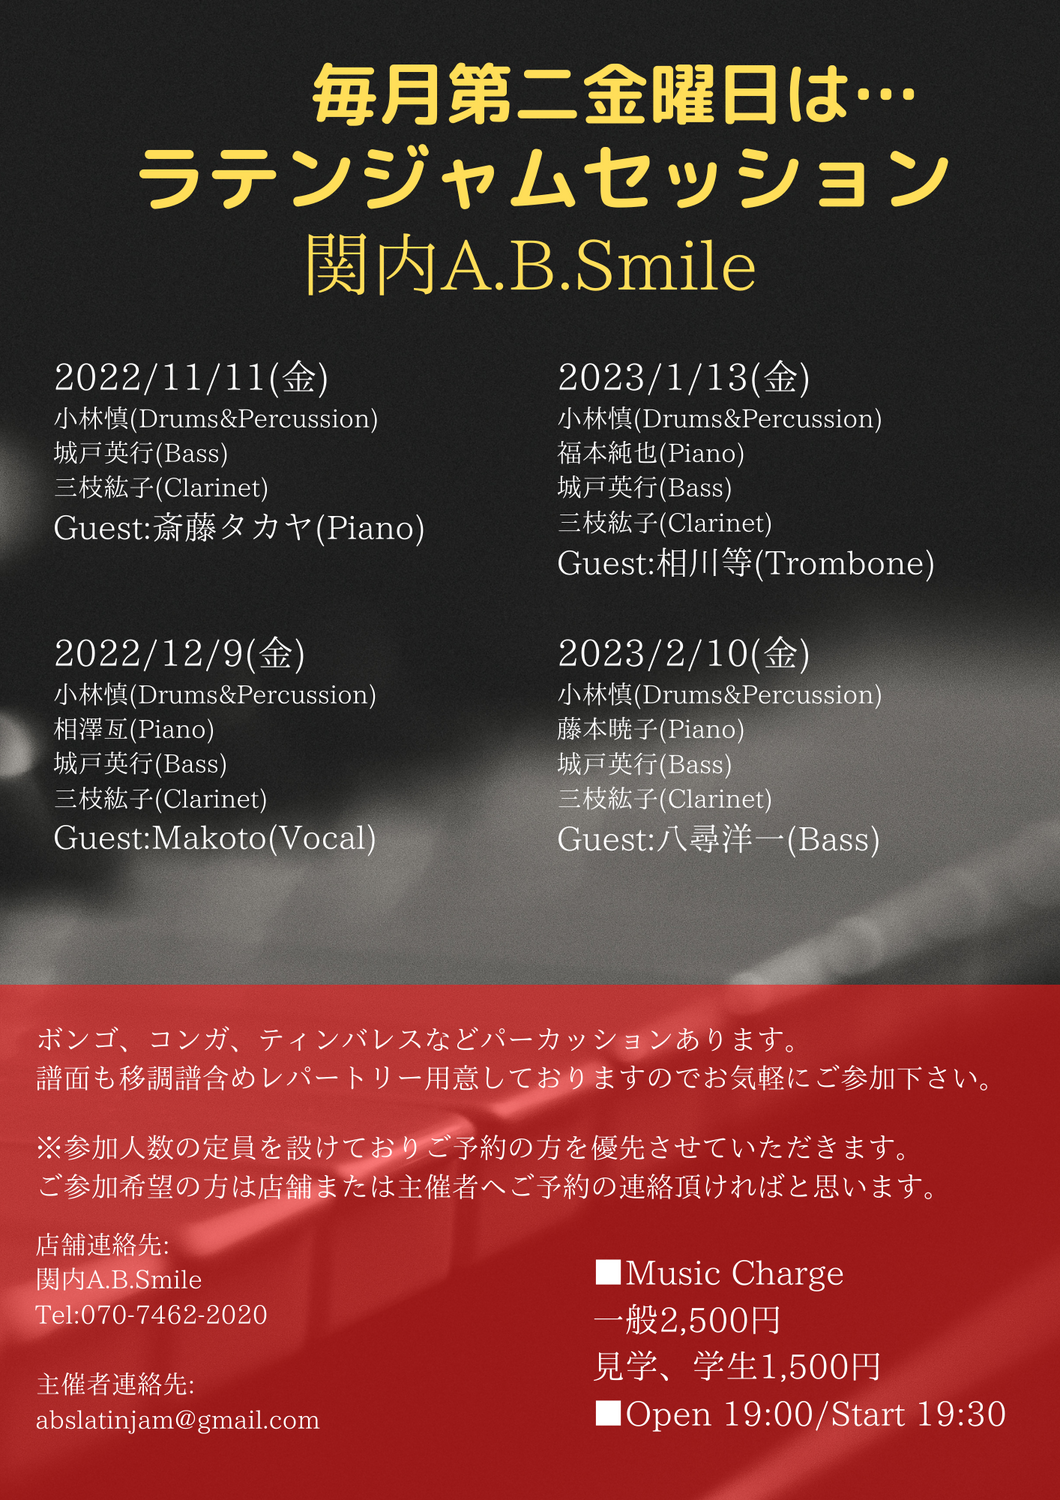 2022/12/9(金)「Latin Jam Session」 @ 関内A.B.Smile